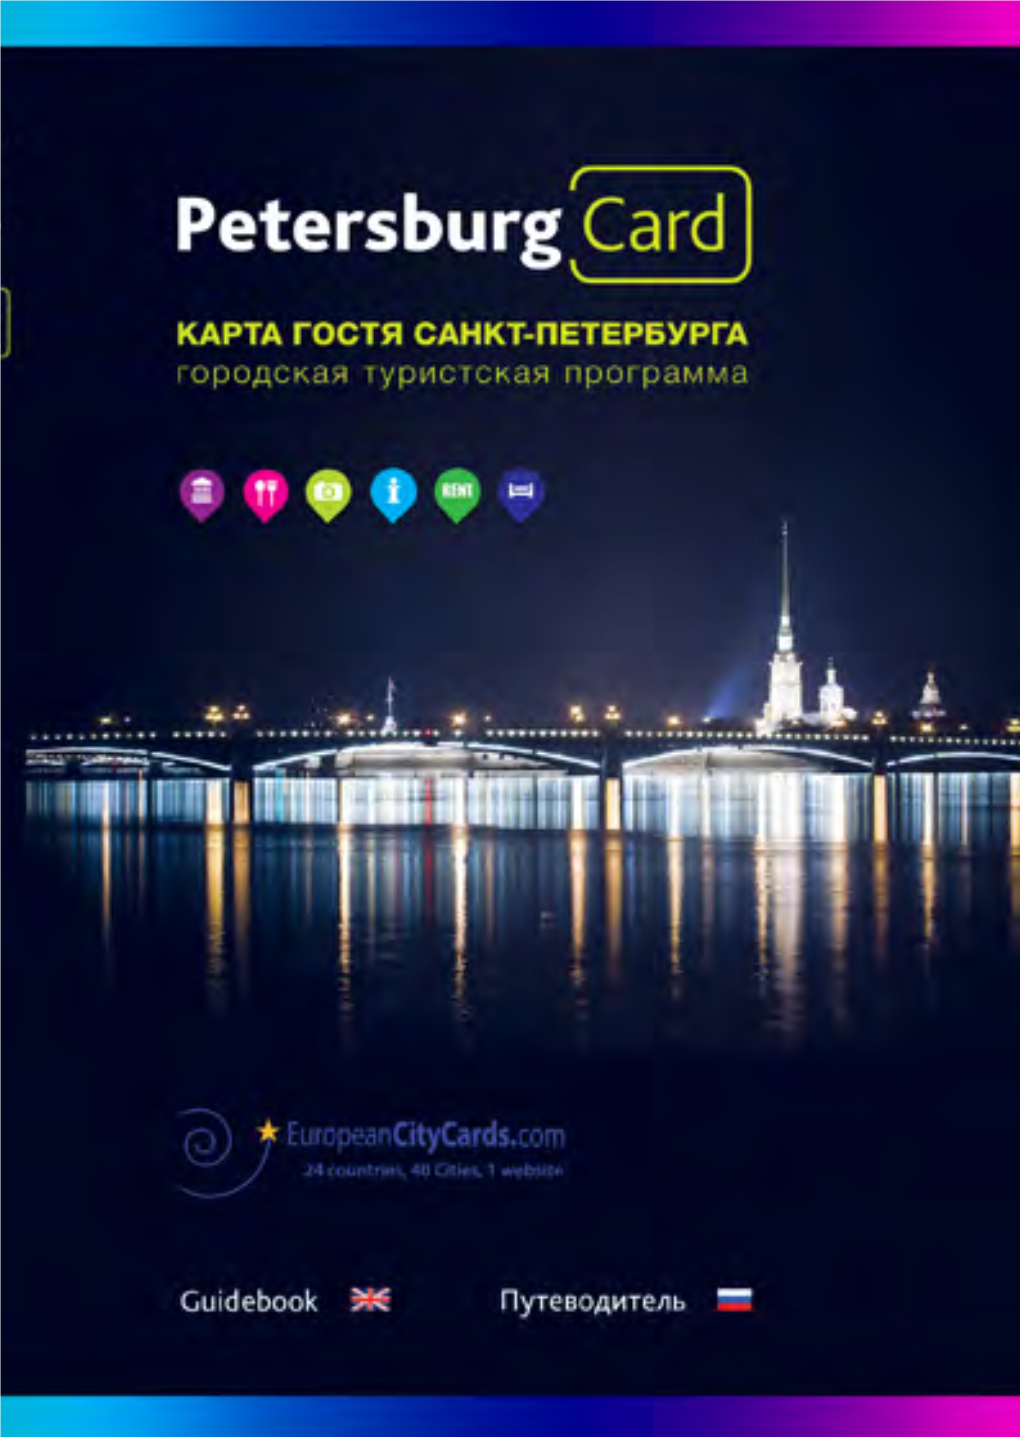 Petersburg Card 2014.Pdf